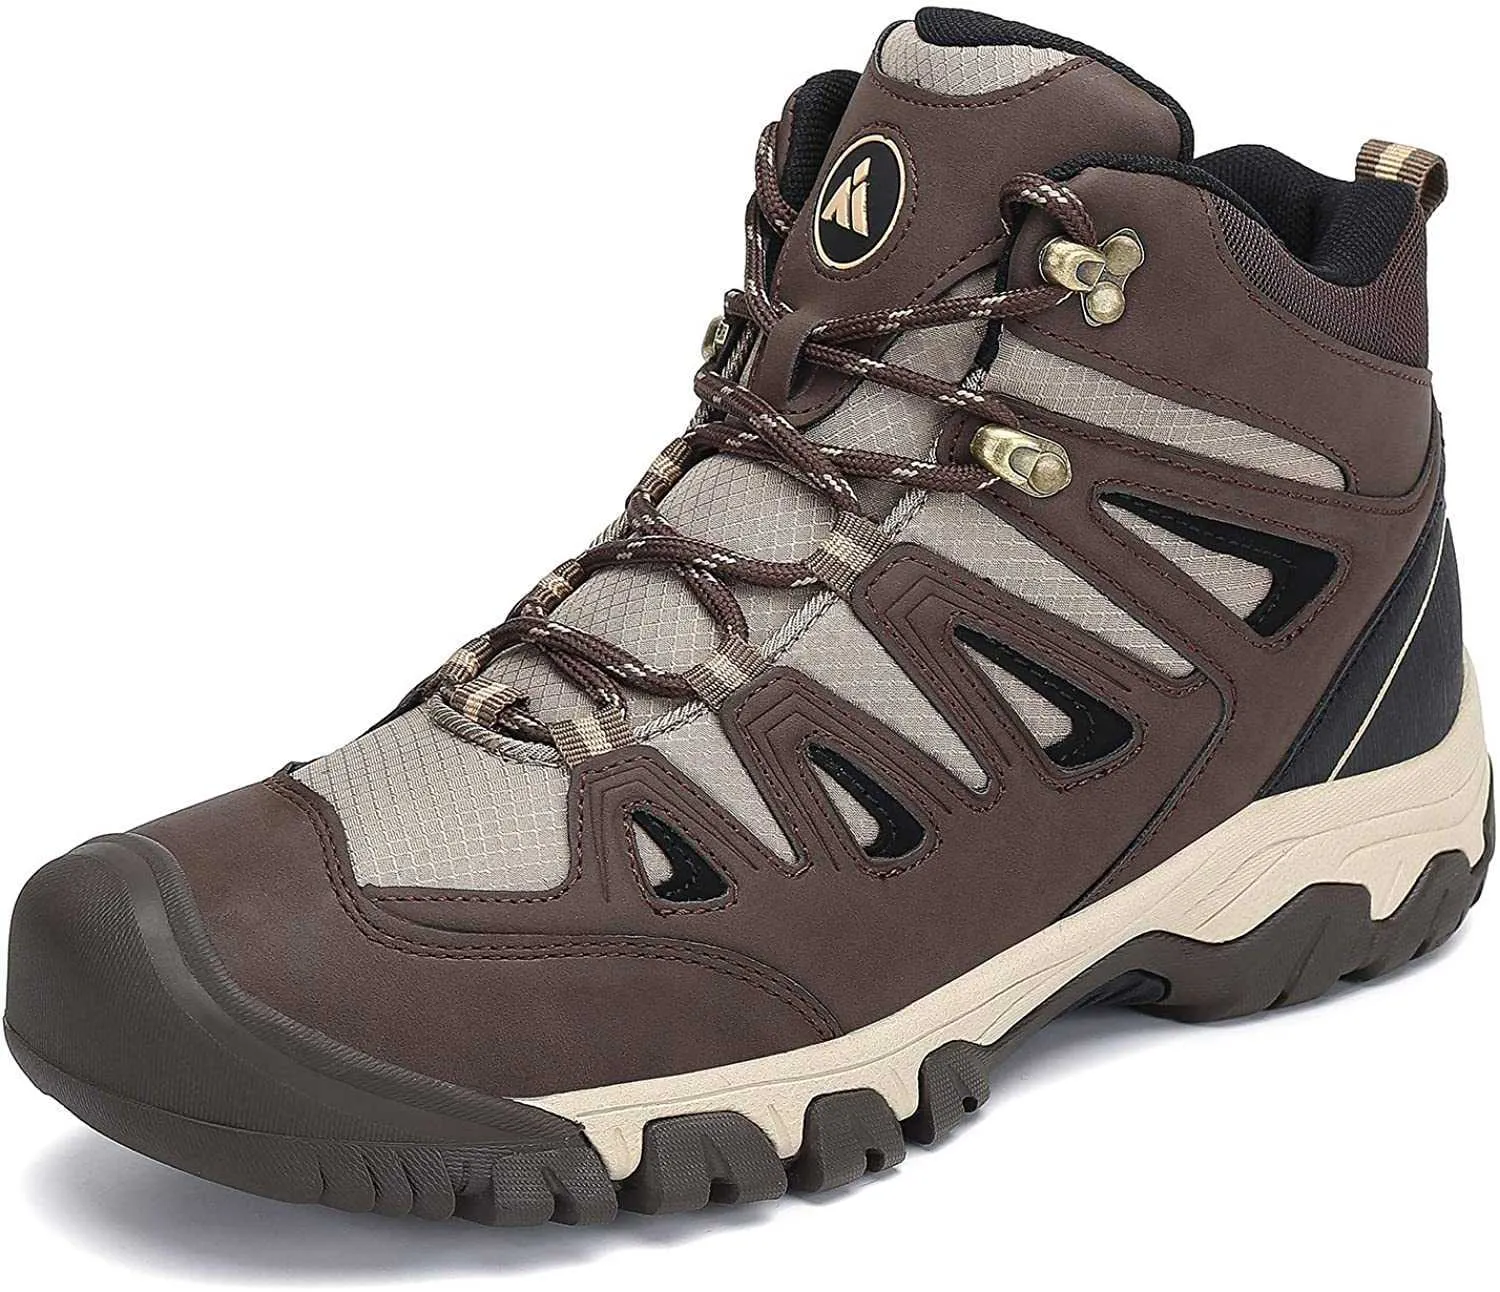 HBP 비 브랜드 하이킹 신발 고품질 새로운 도착 야외 편안한 방수 신발 남성 야외